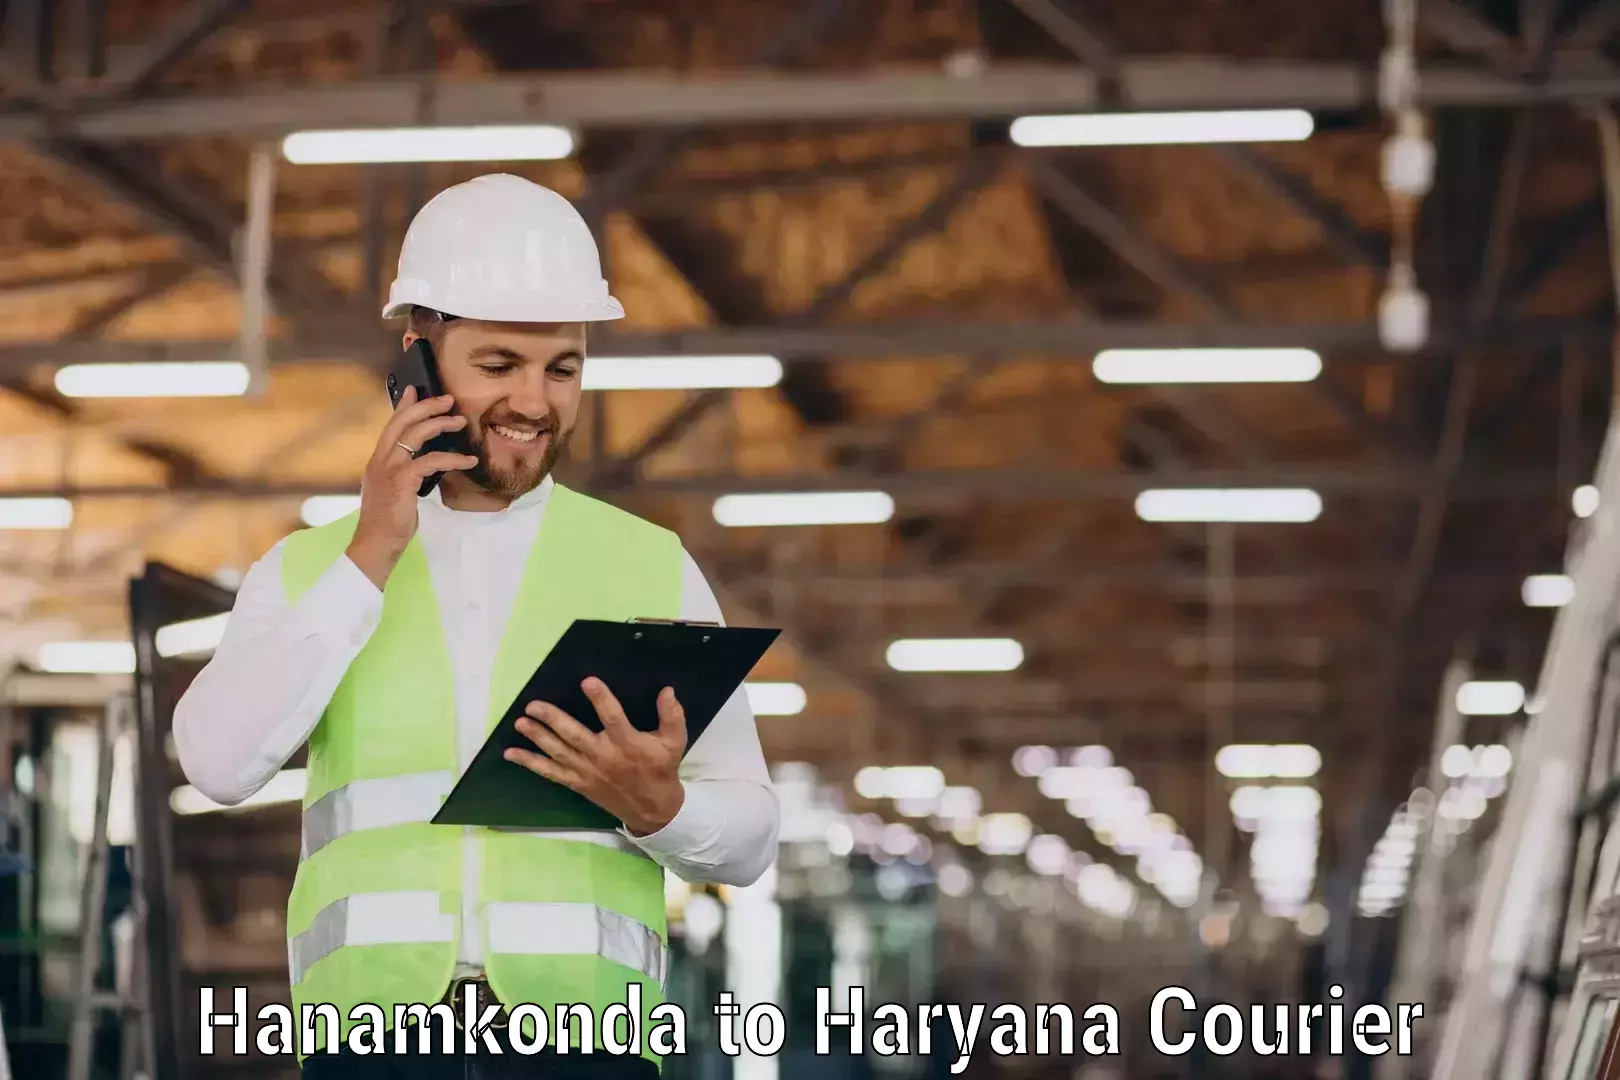 Courier service comparison Hanamkonda to Dharuhera